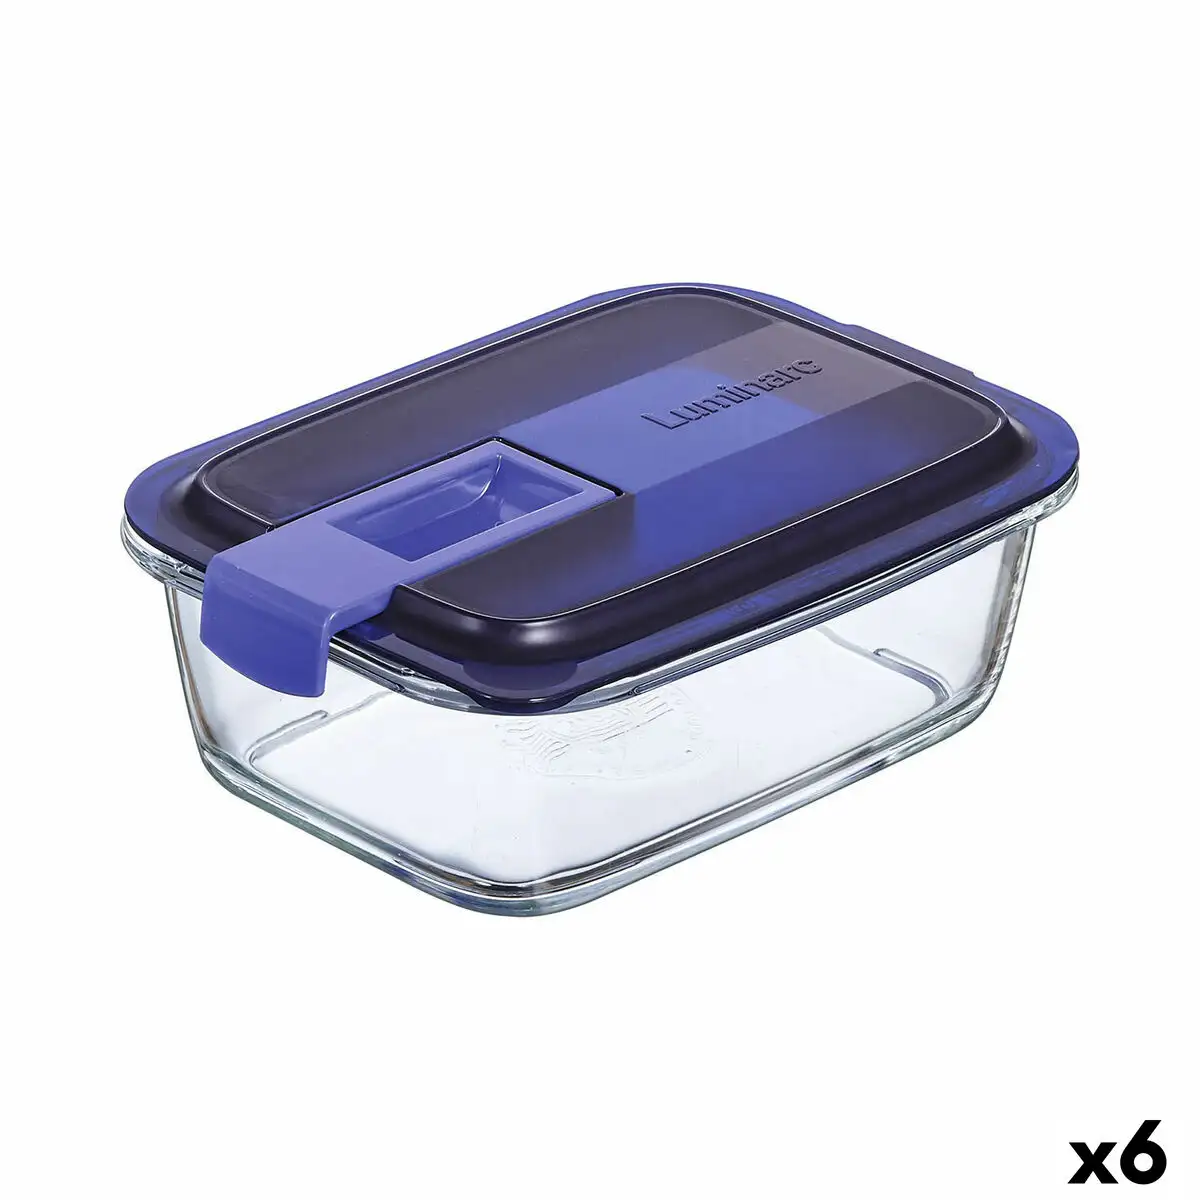 Boite a lunch hermetique luminarc easy box bleu verre 6 unites 820 ml _1512. DIAYTAR SENEGAL - Là où l'Élégance Devient un Mode de Vie. Naviguez à travers notre gamme et choisissez des produits qui apportent une touche raffinée à votre quotidien.